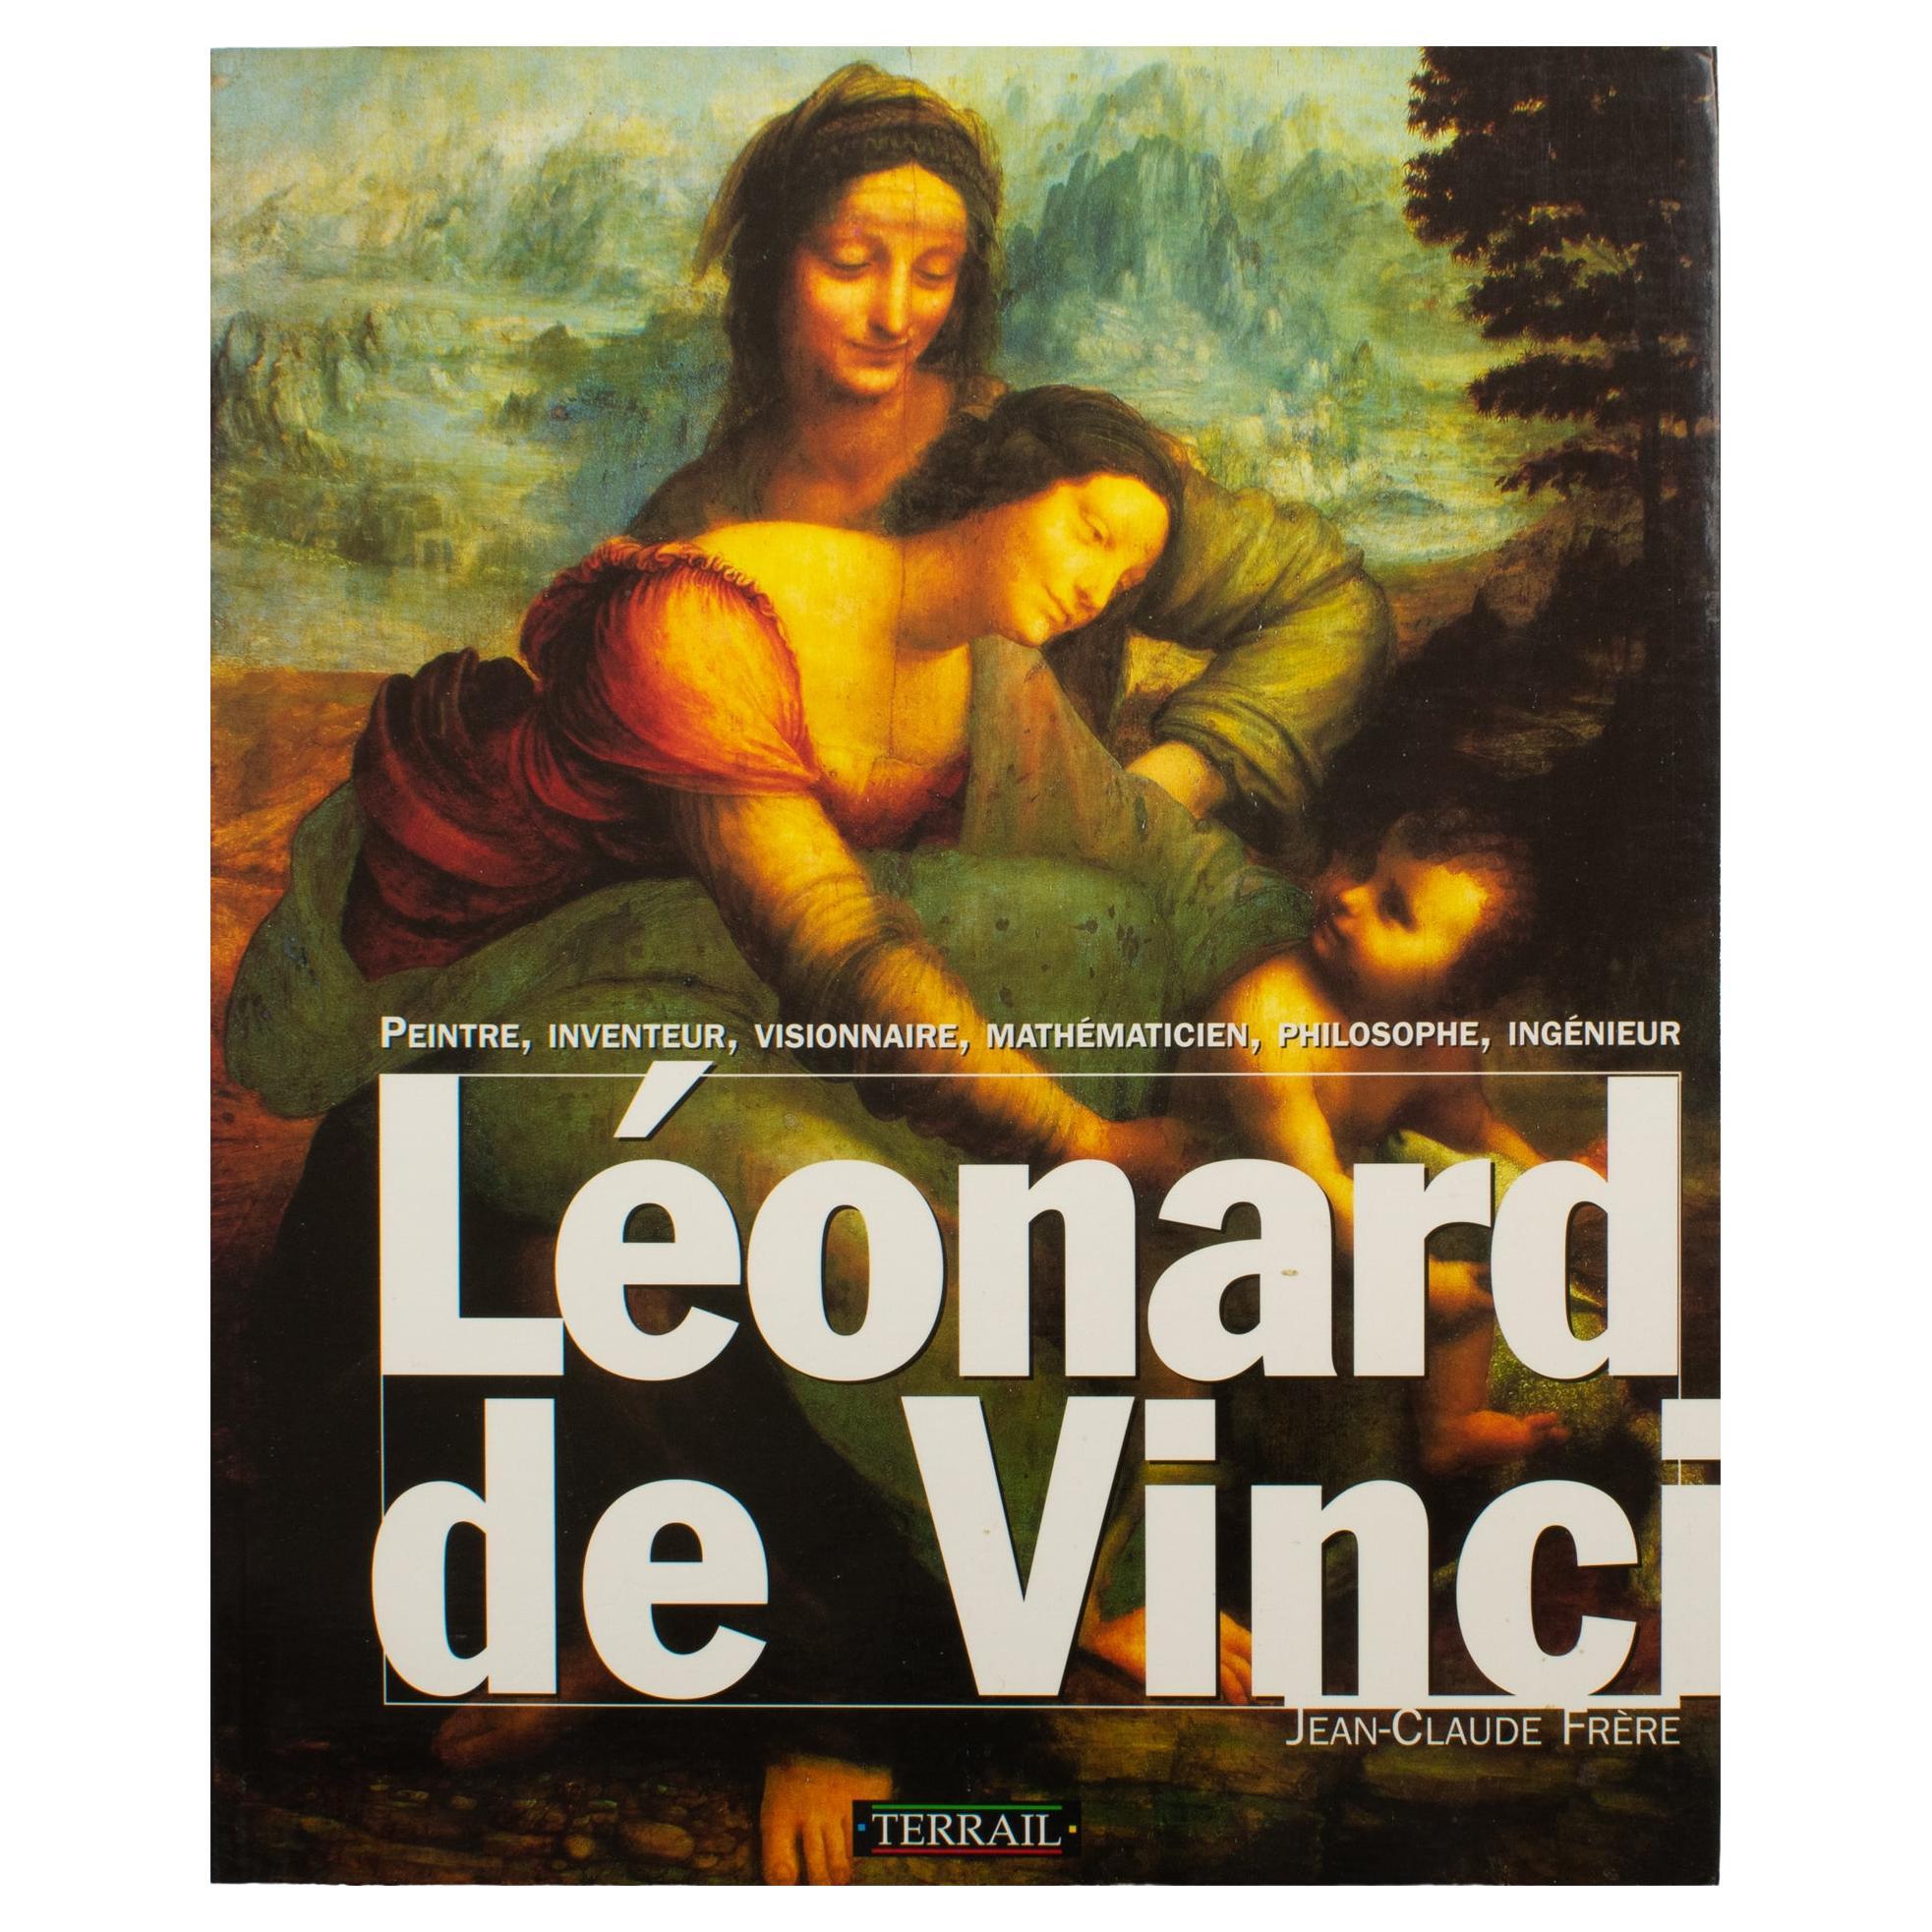 Livre français de Léonard de Vinci, par Jean-Claude Frere, 1994